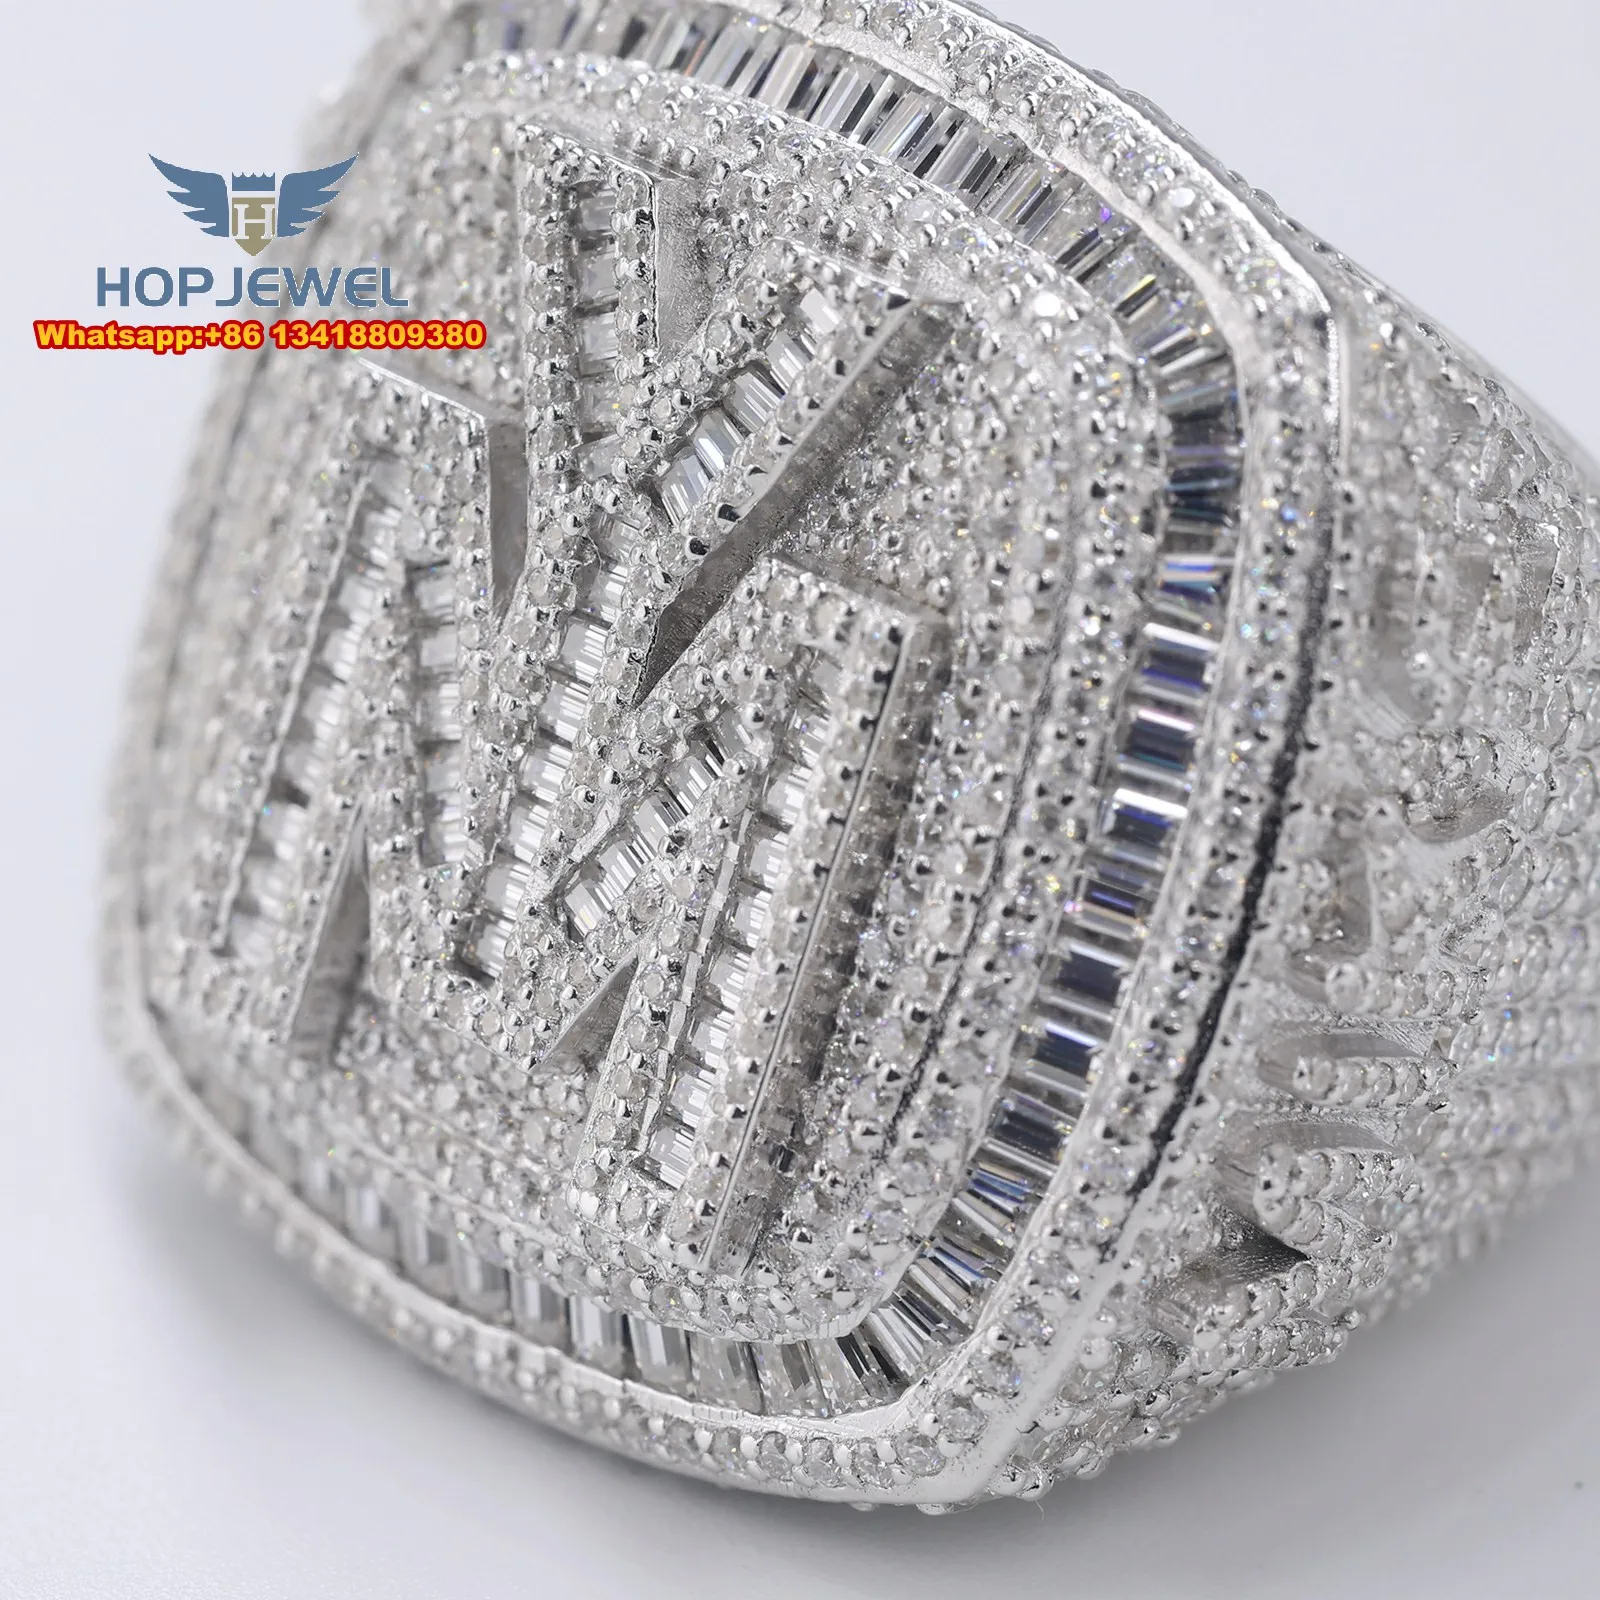 JEWE Custom Men's Ring Iced Out Ring 925 Sterling Silver 14K/White Gold VVS D Moissanite Diamond Champion Rings Hip Hop Ring